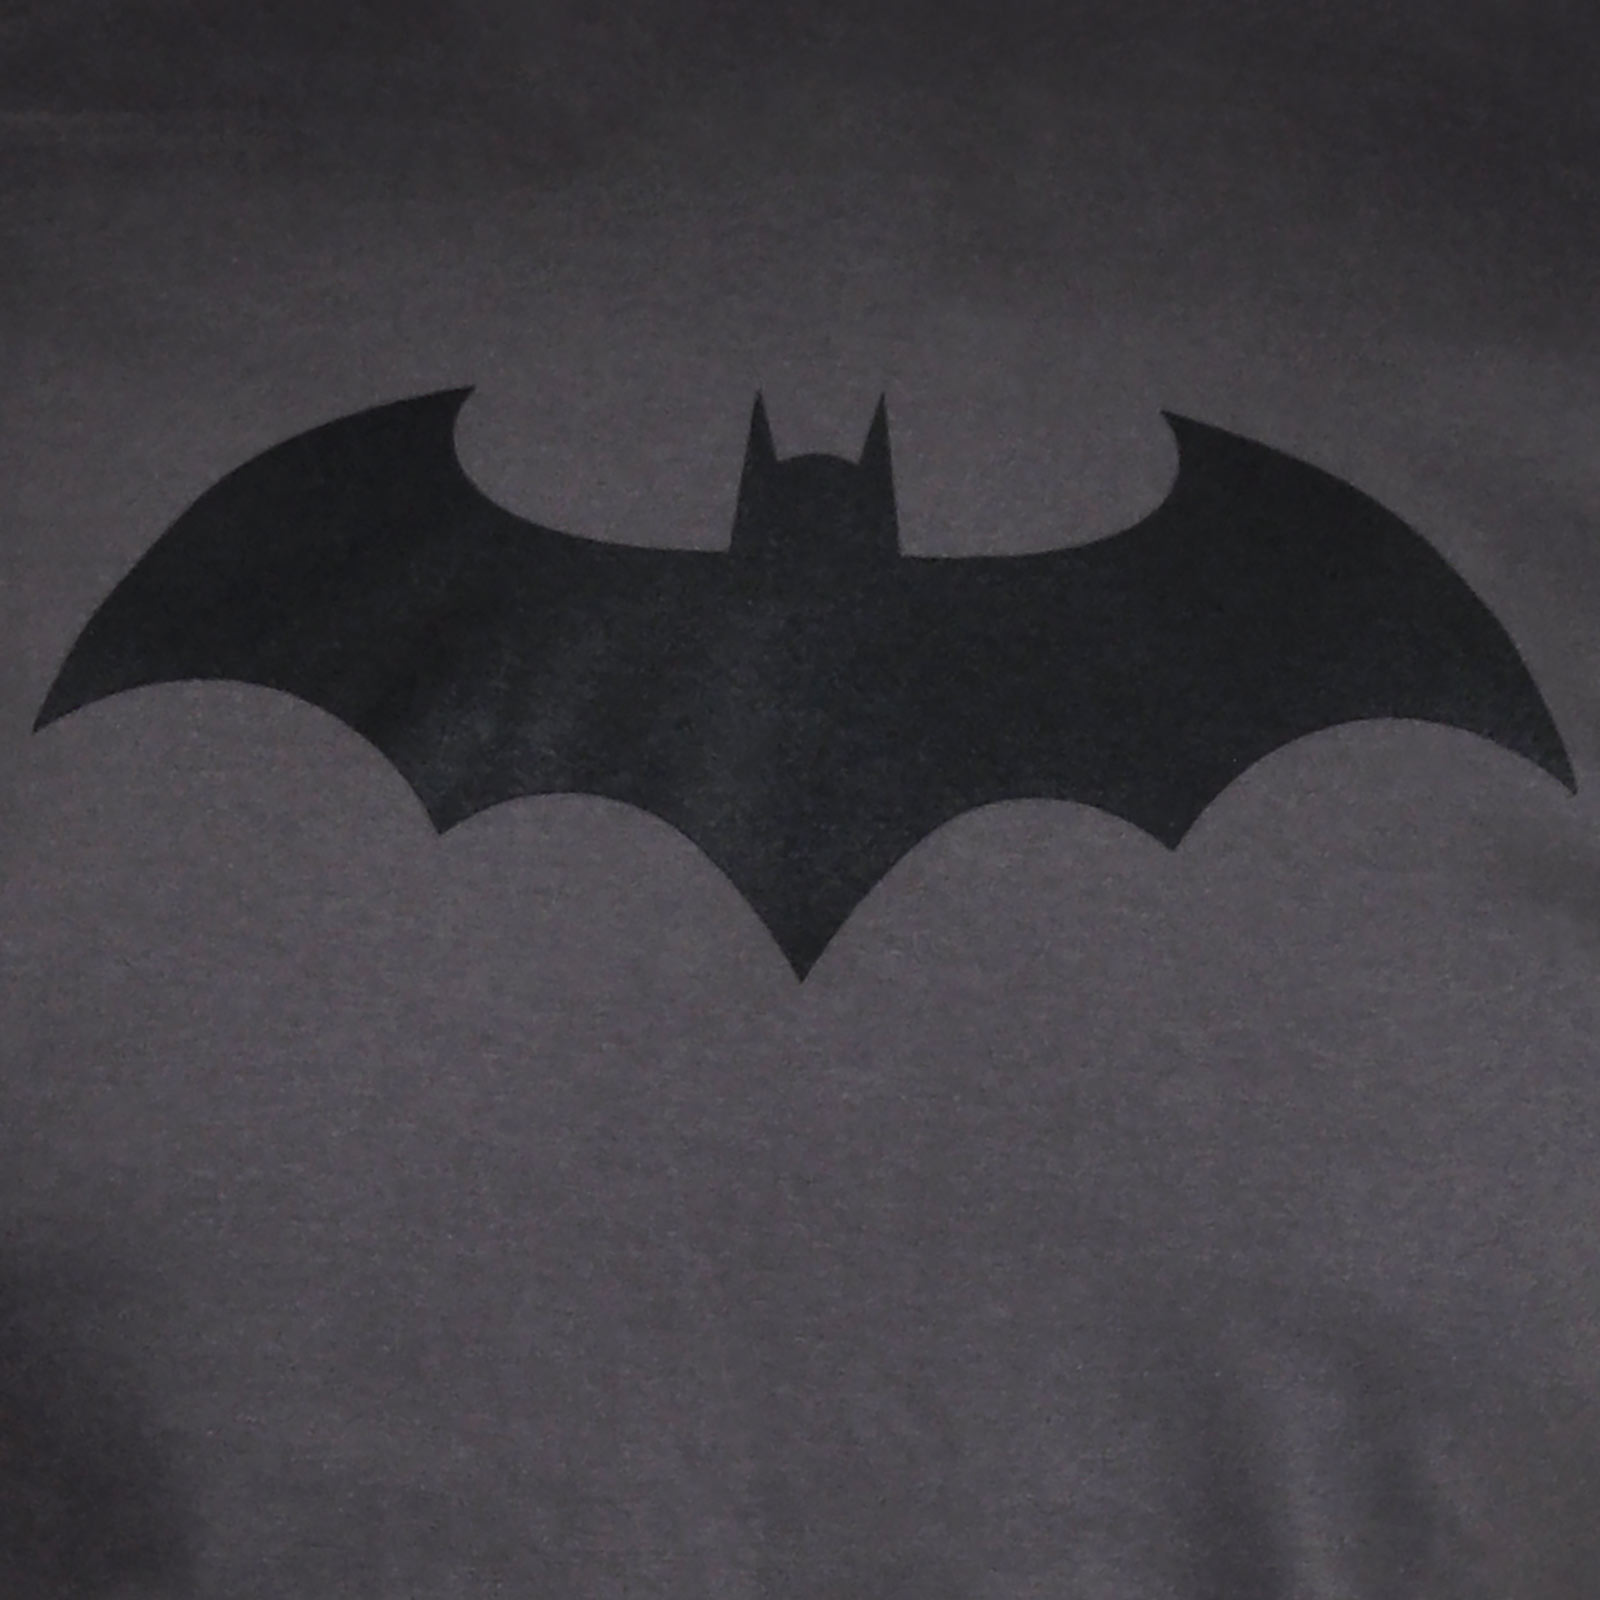 Batman - Bat Logo T-Shirt grau